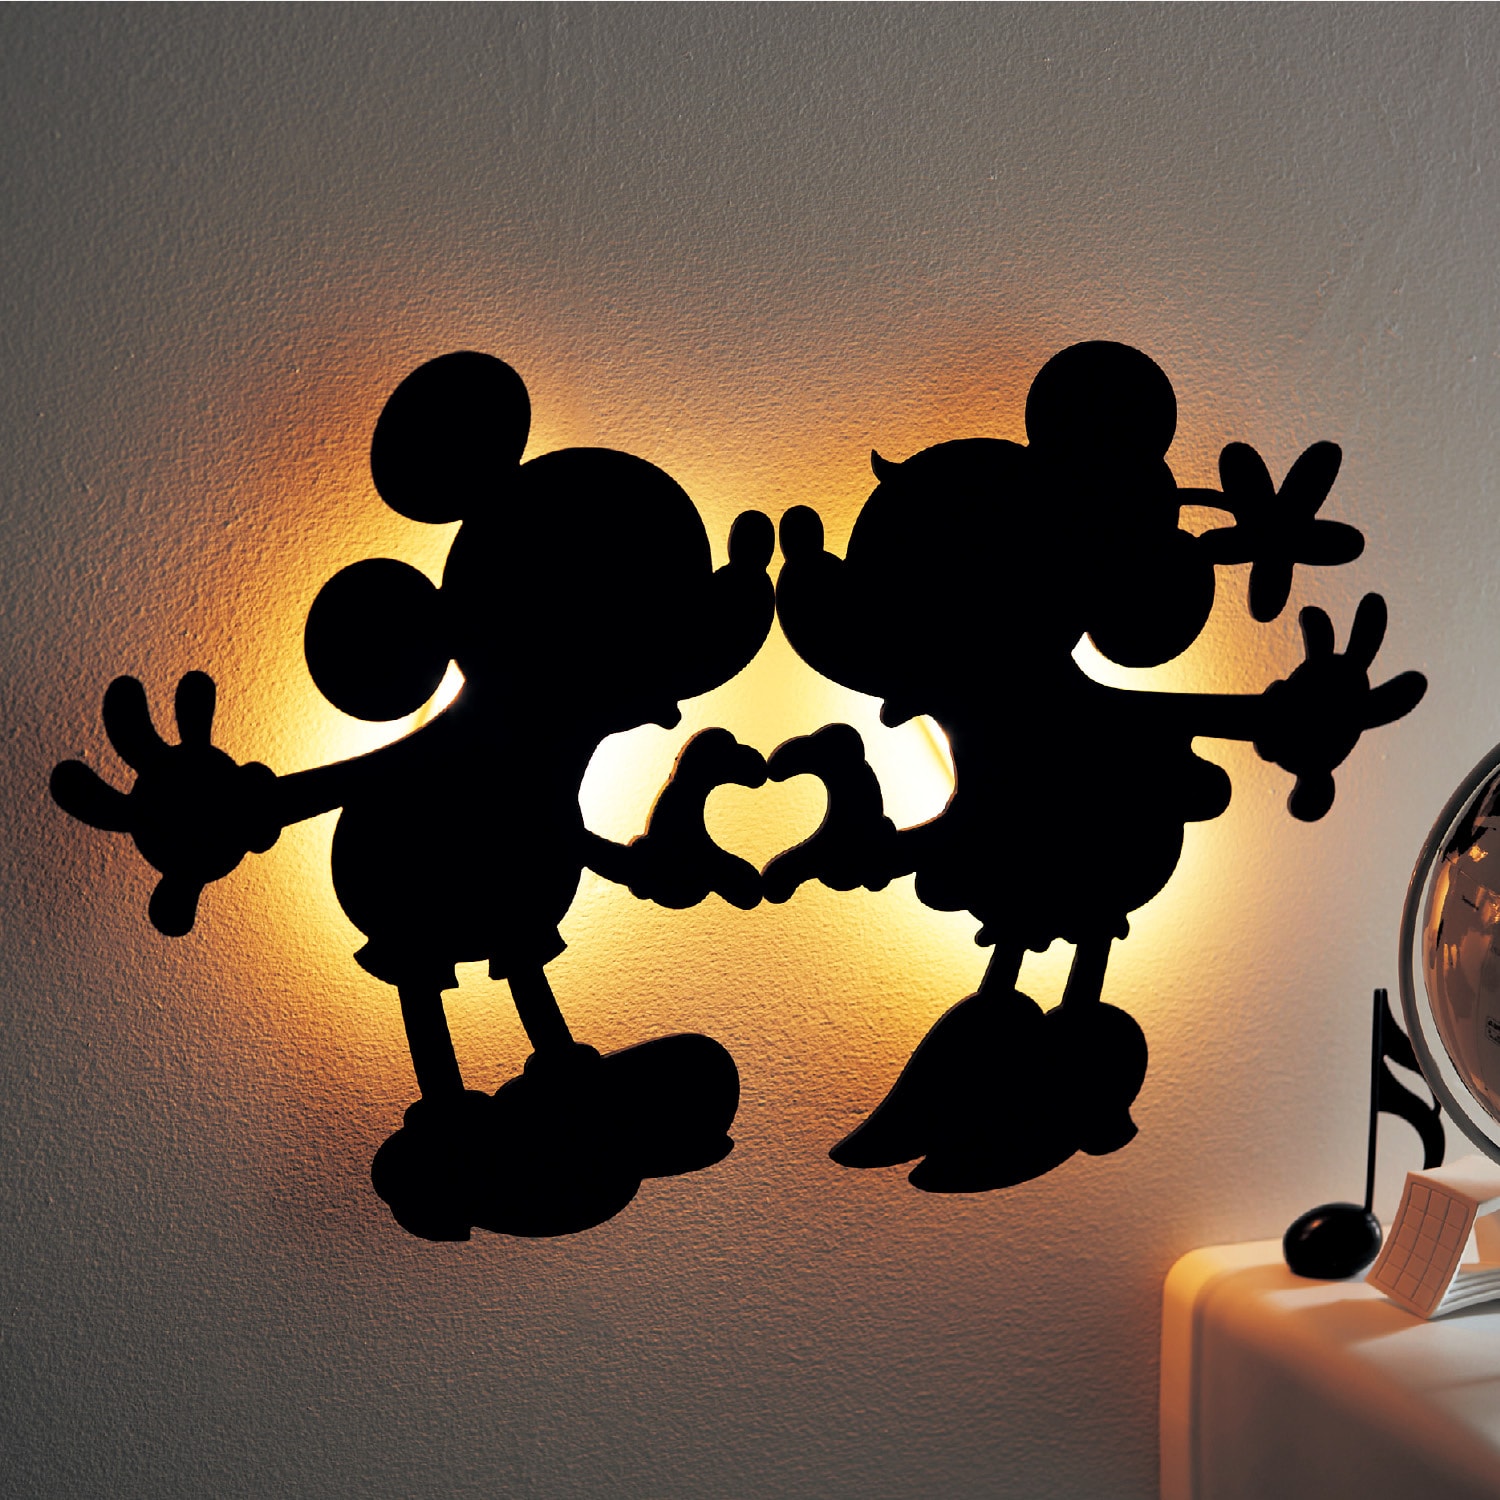 【ディズニー/Disney】ペアで使うシルエットウォールライト「ミッキー & ミニー」画像